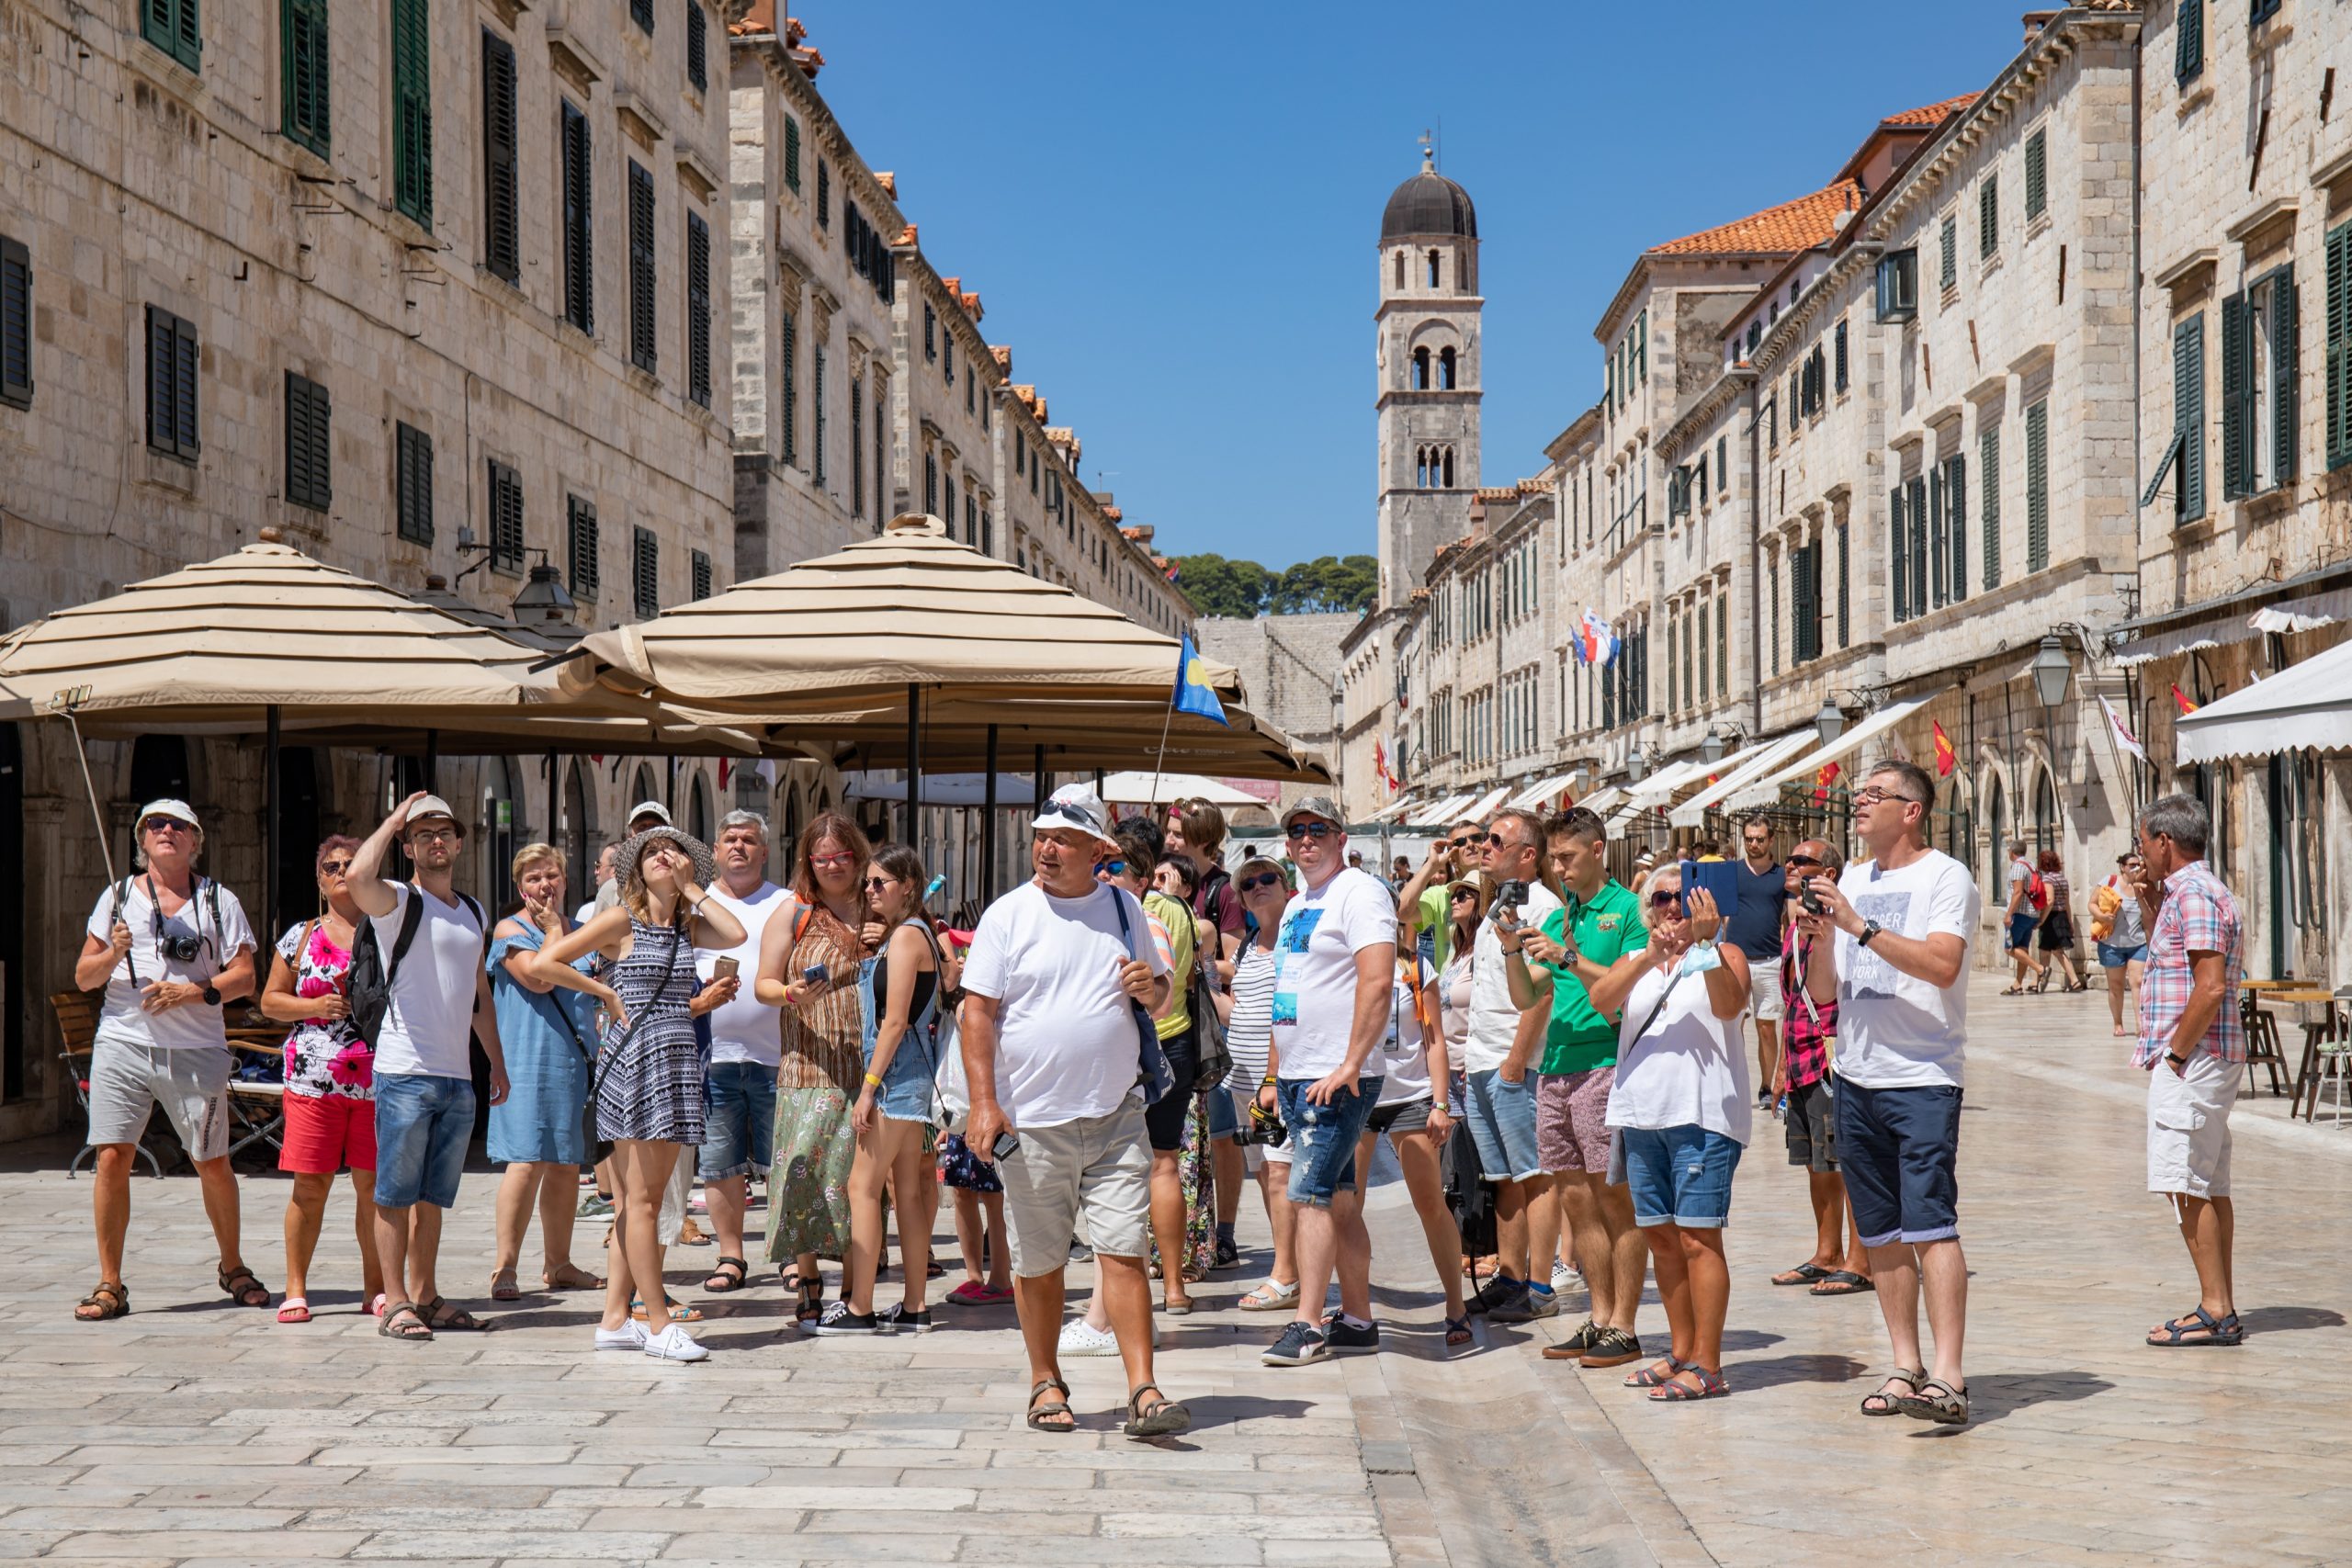 27.07.2020., Stradun, Dubrovnik - Iz dana u dan osjetno raste popunjenost grada.
Photo: Grgo Jelavic/PIXSELL